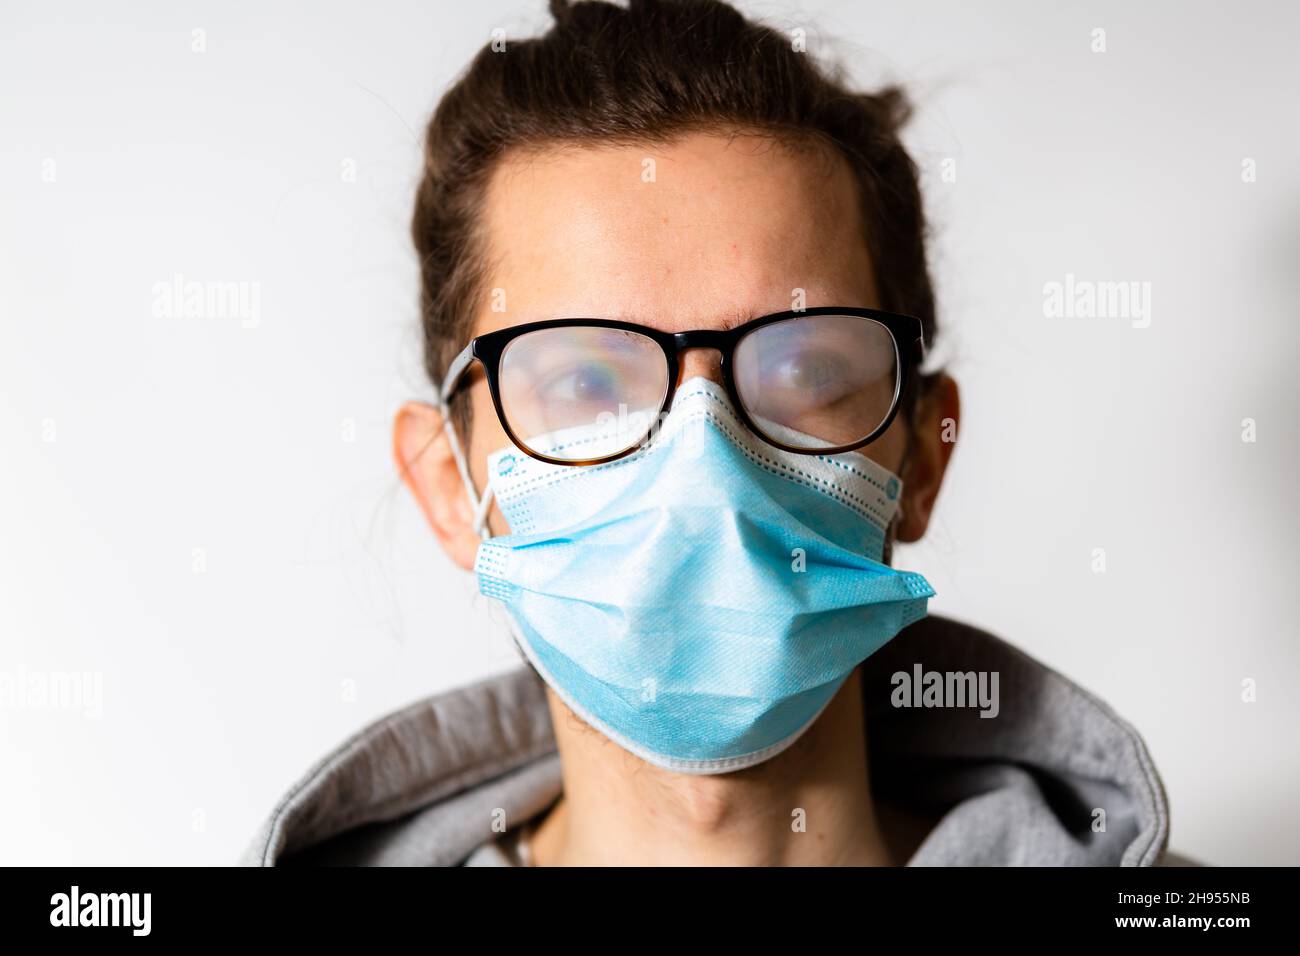 Giovane uomo con occhiali foggy causato da indossare maschera usa e getta. Misura protettiva durante la pandemia di coronavirus Foto Stock